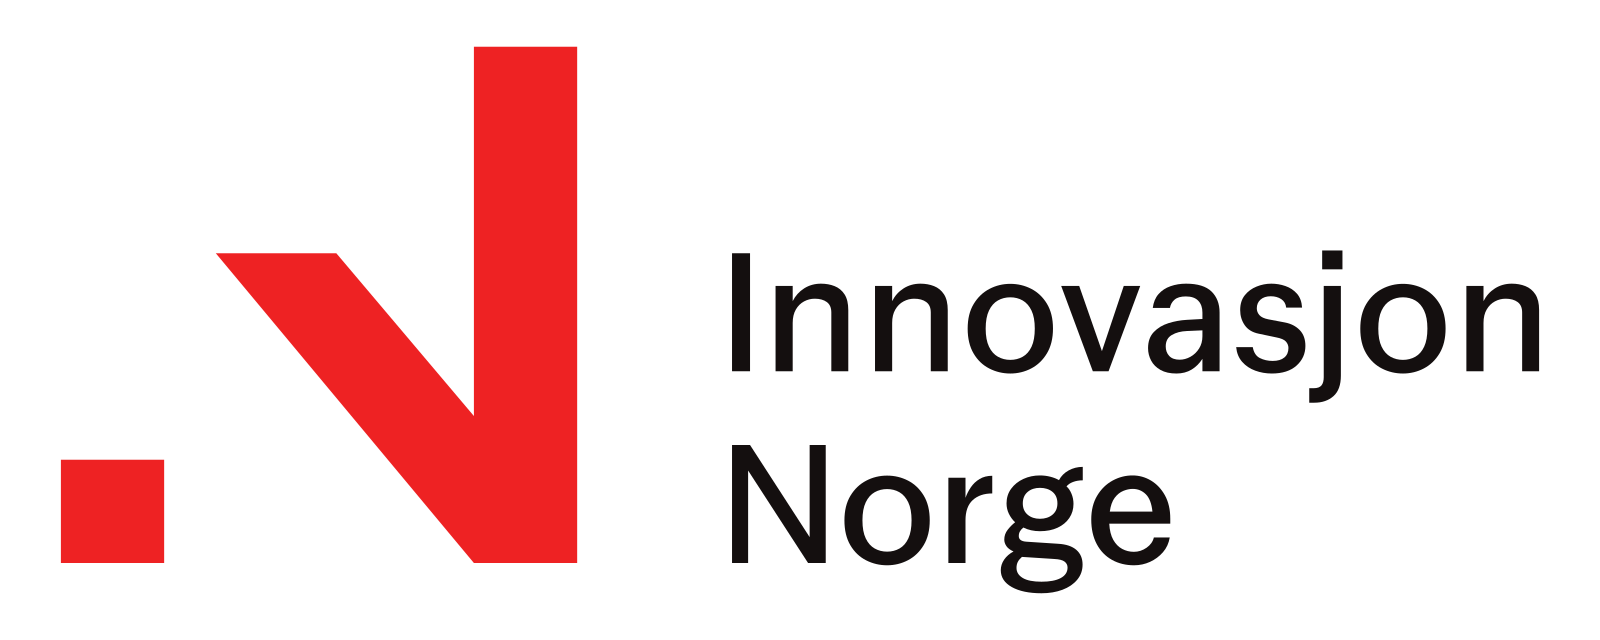 Innovasjon_Norge-logo.svg.png